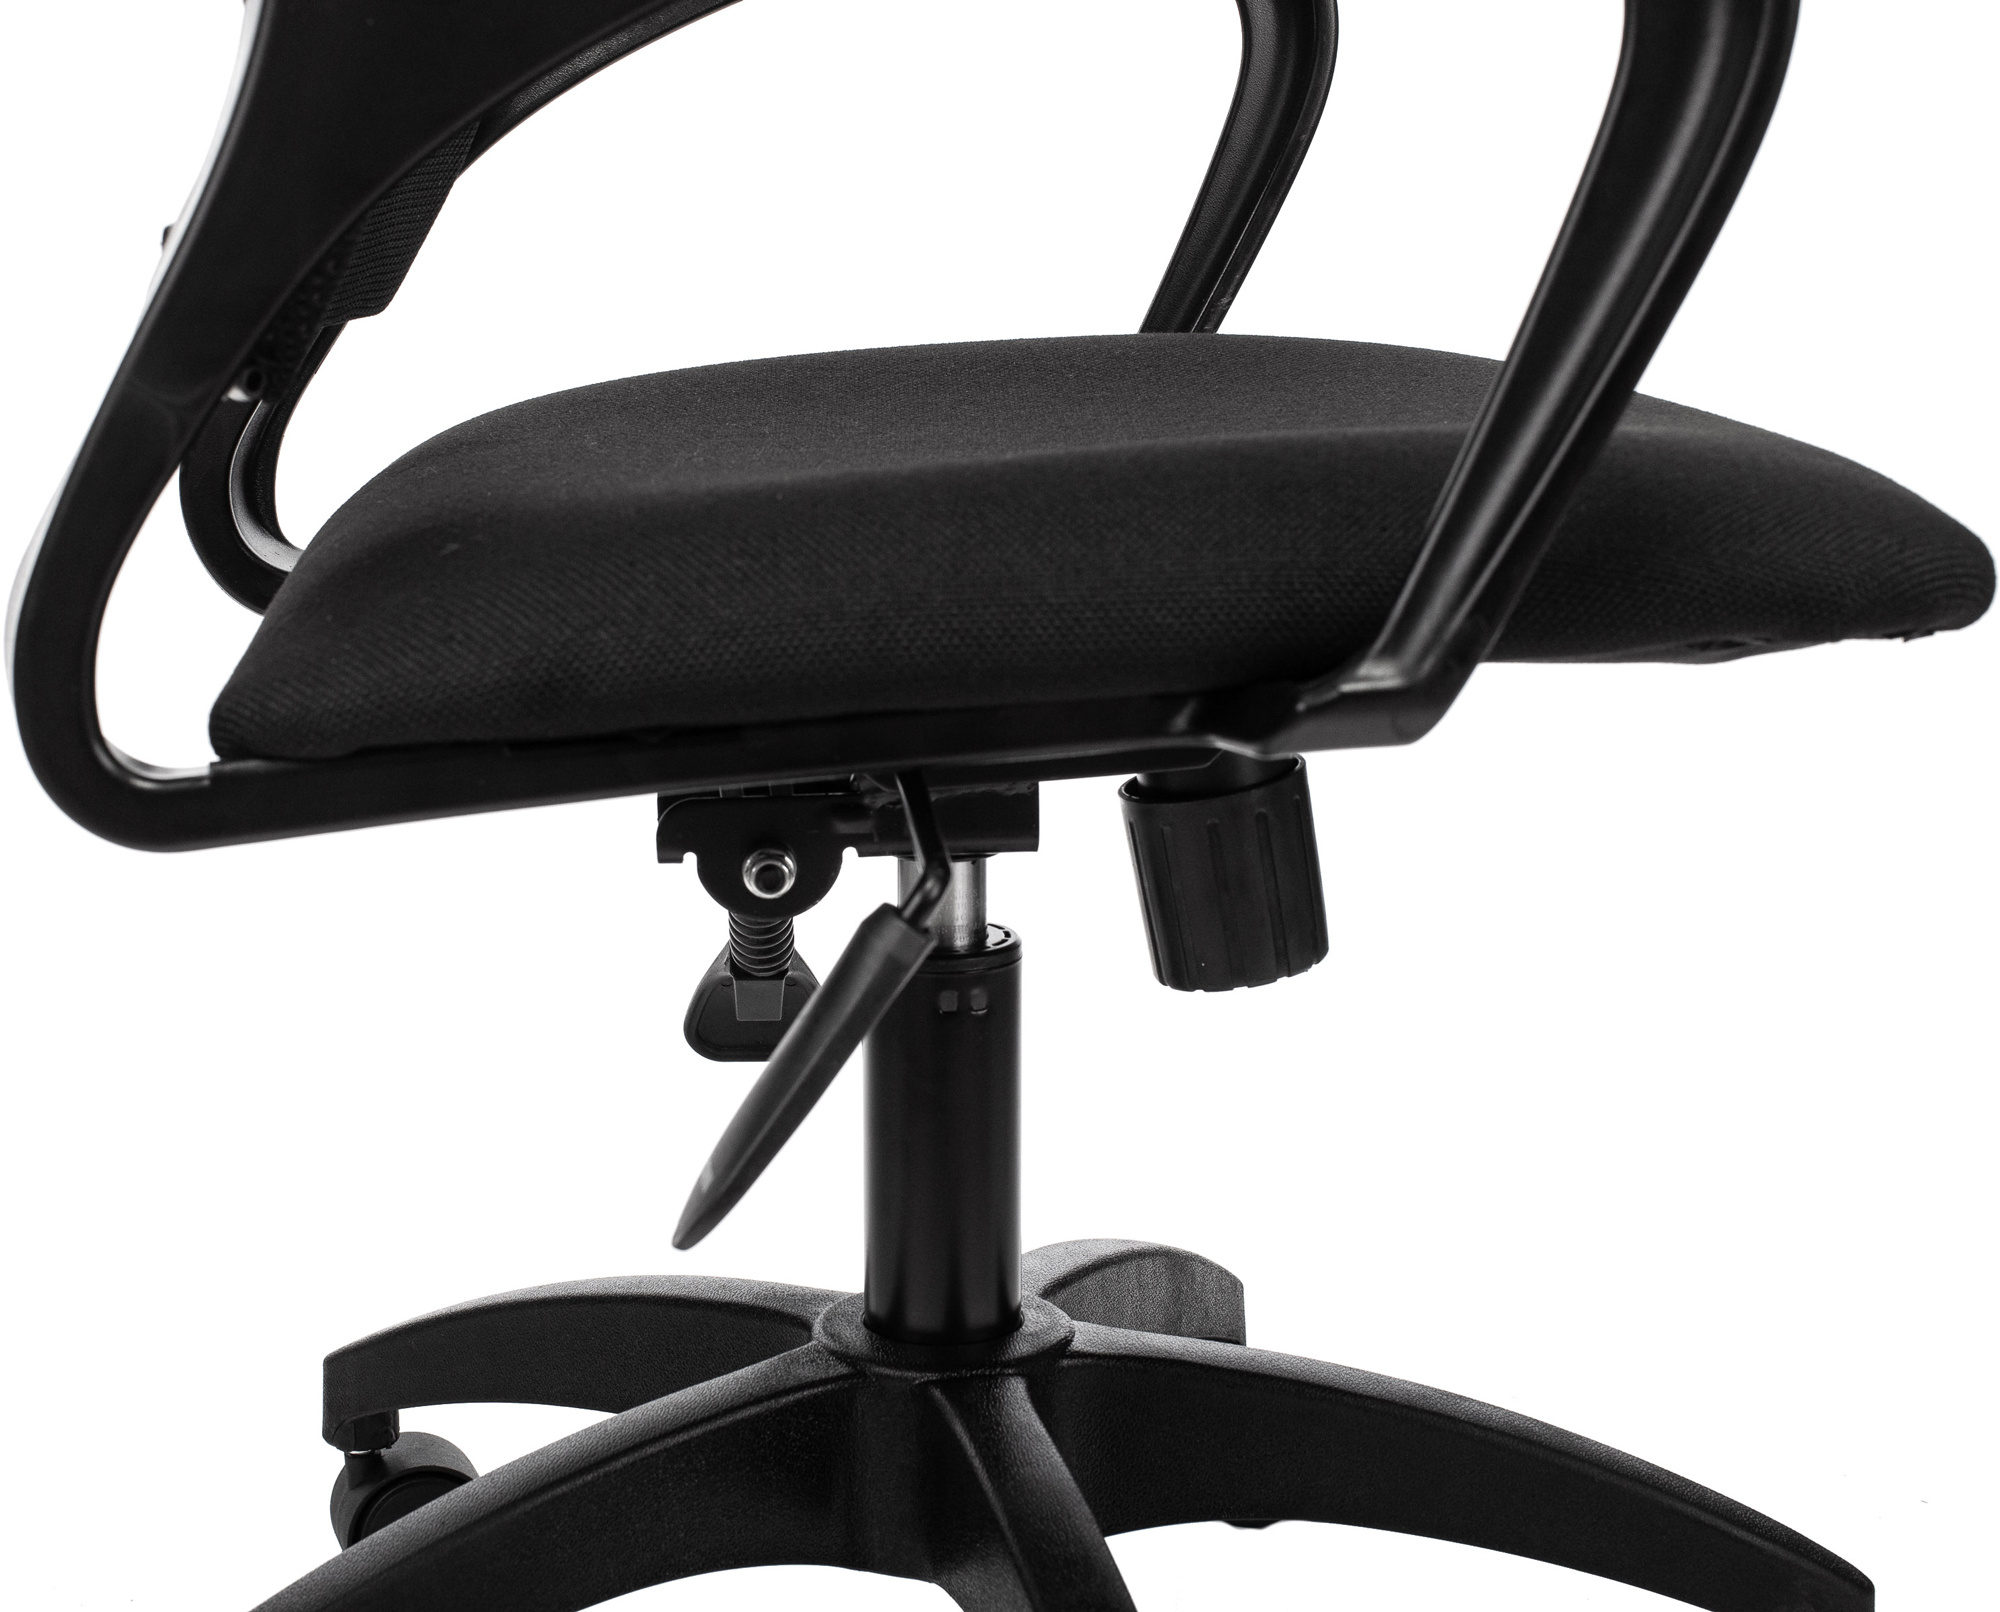 Кресло оператора officespace sp m96 ткань спинка сетка черная сиденье tw черная механизм качания